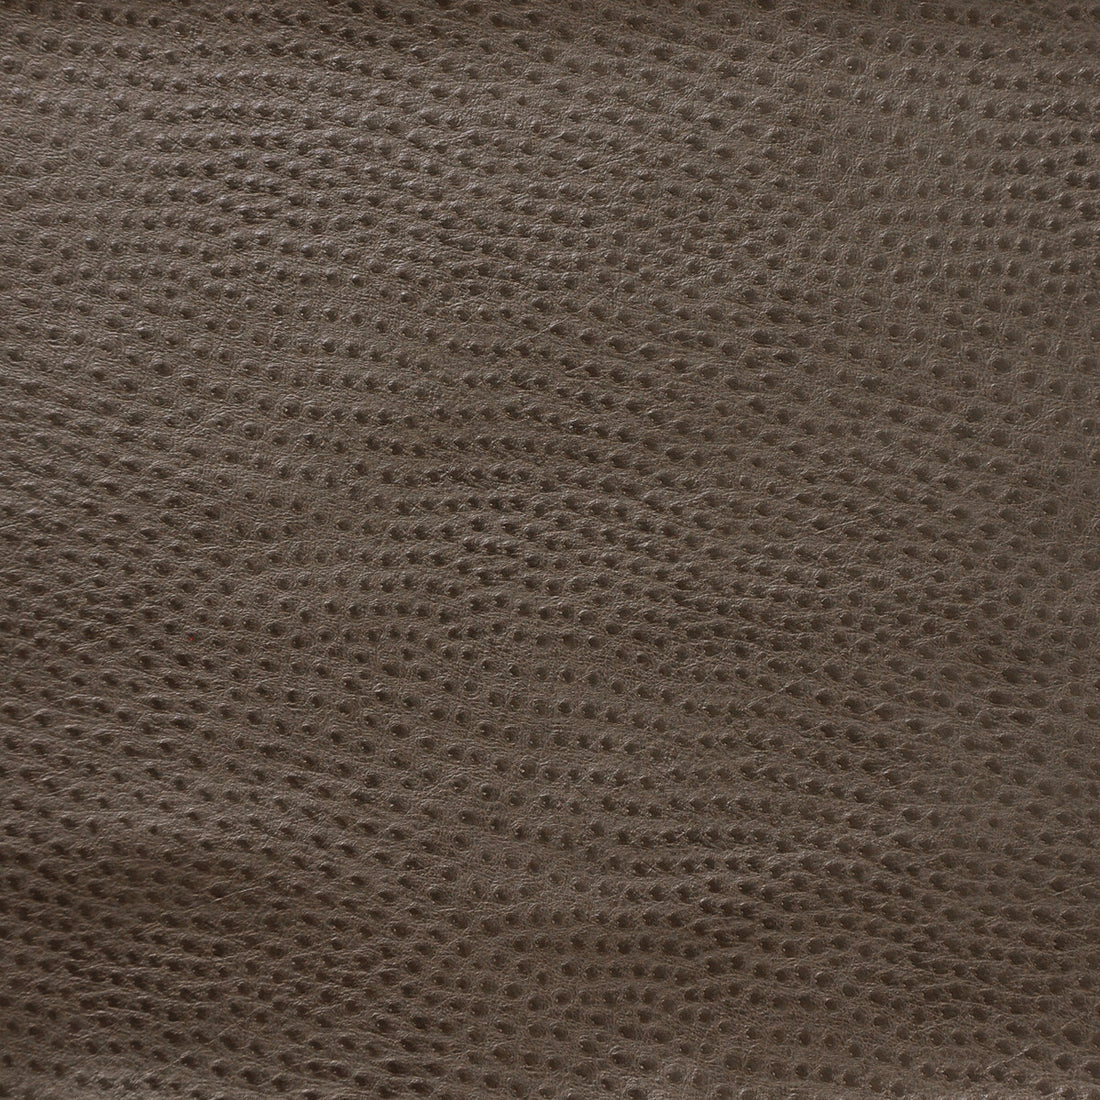 Kravet Design fabric in delaney-2121 color - pattern DELANEY.2121.0 - by Kravet Design